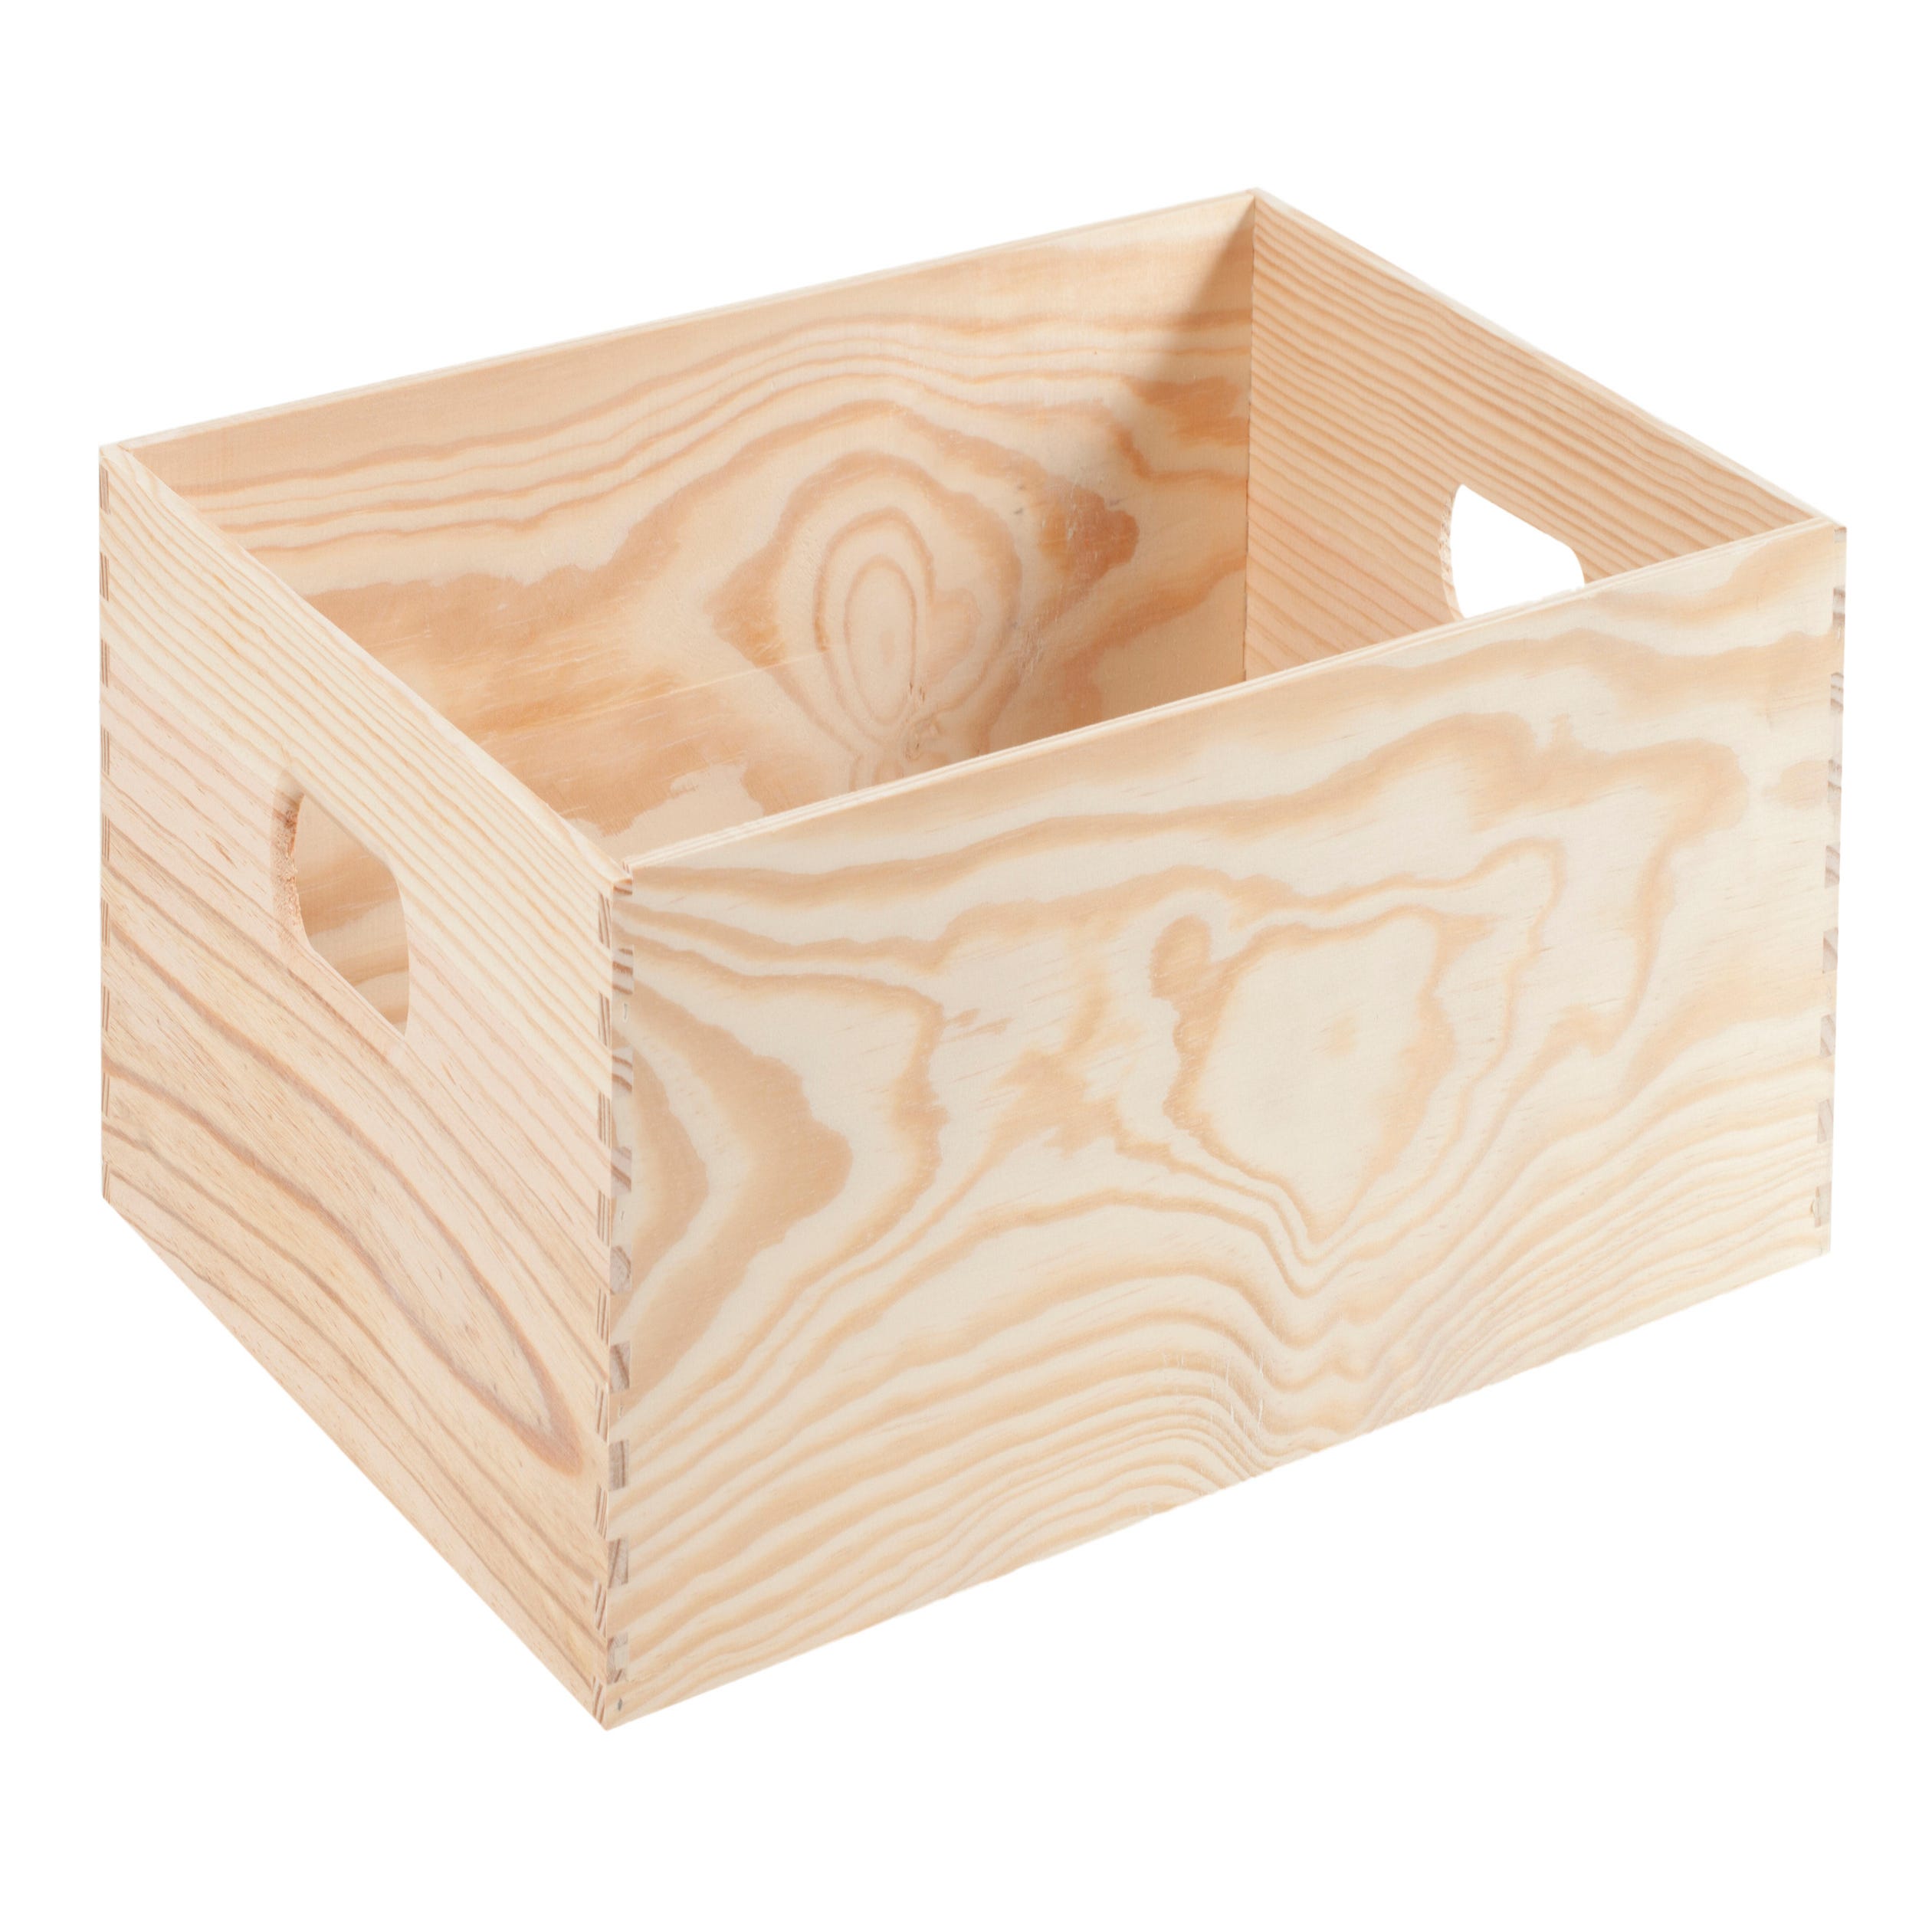 Comprar caja de madera blanca grande Online